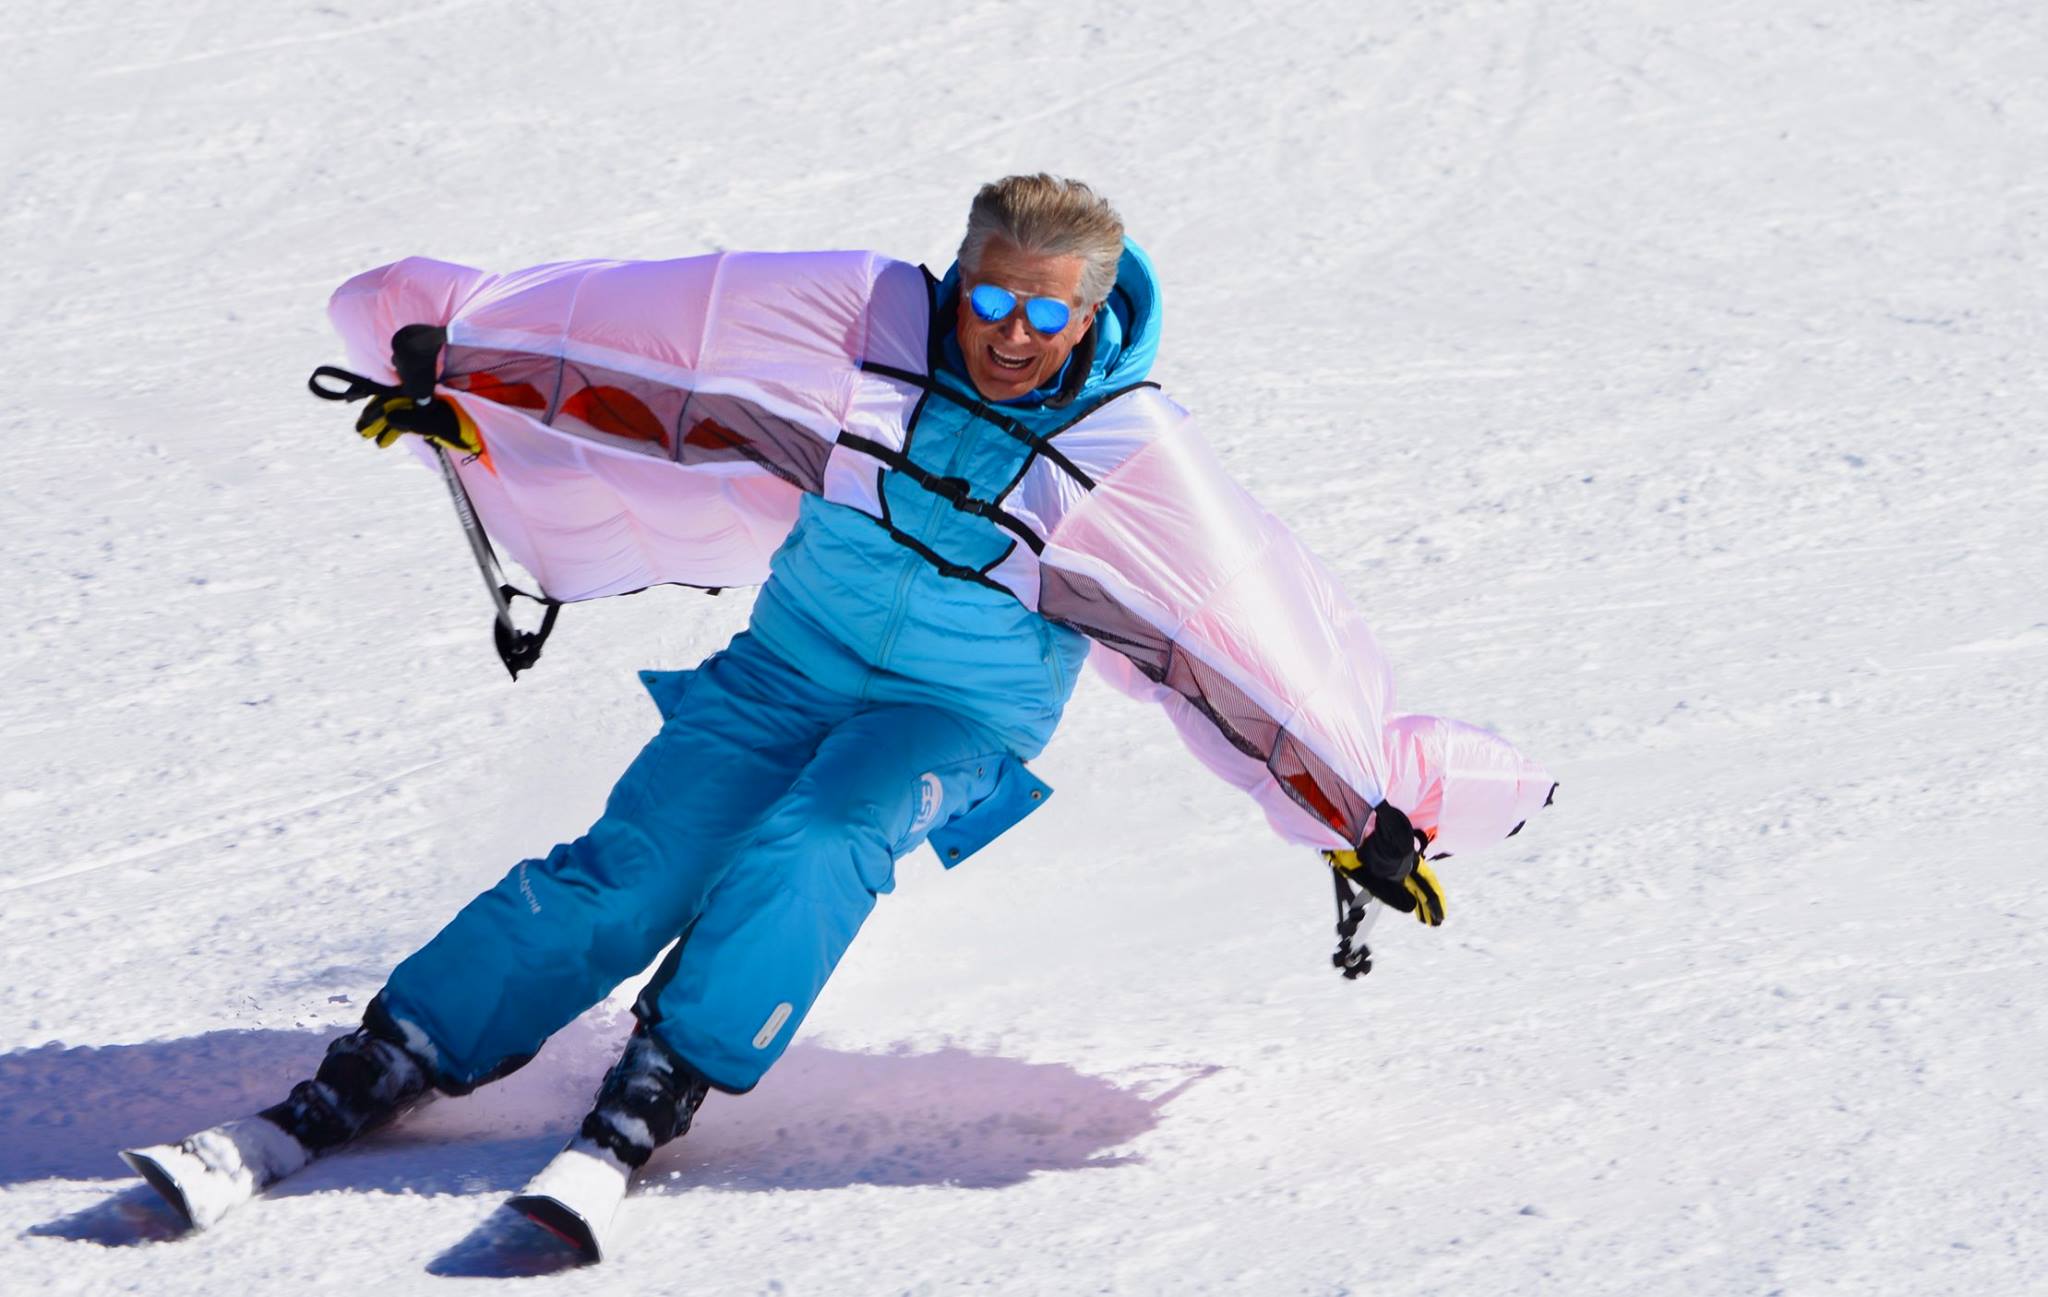 Le wingjump parmi les nouvelles activités à faire au ski